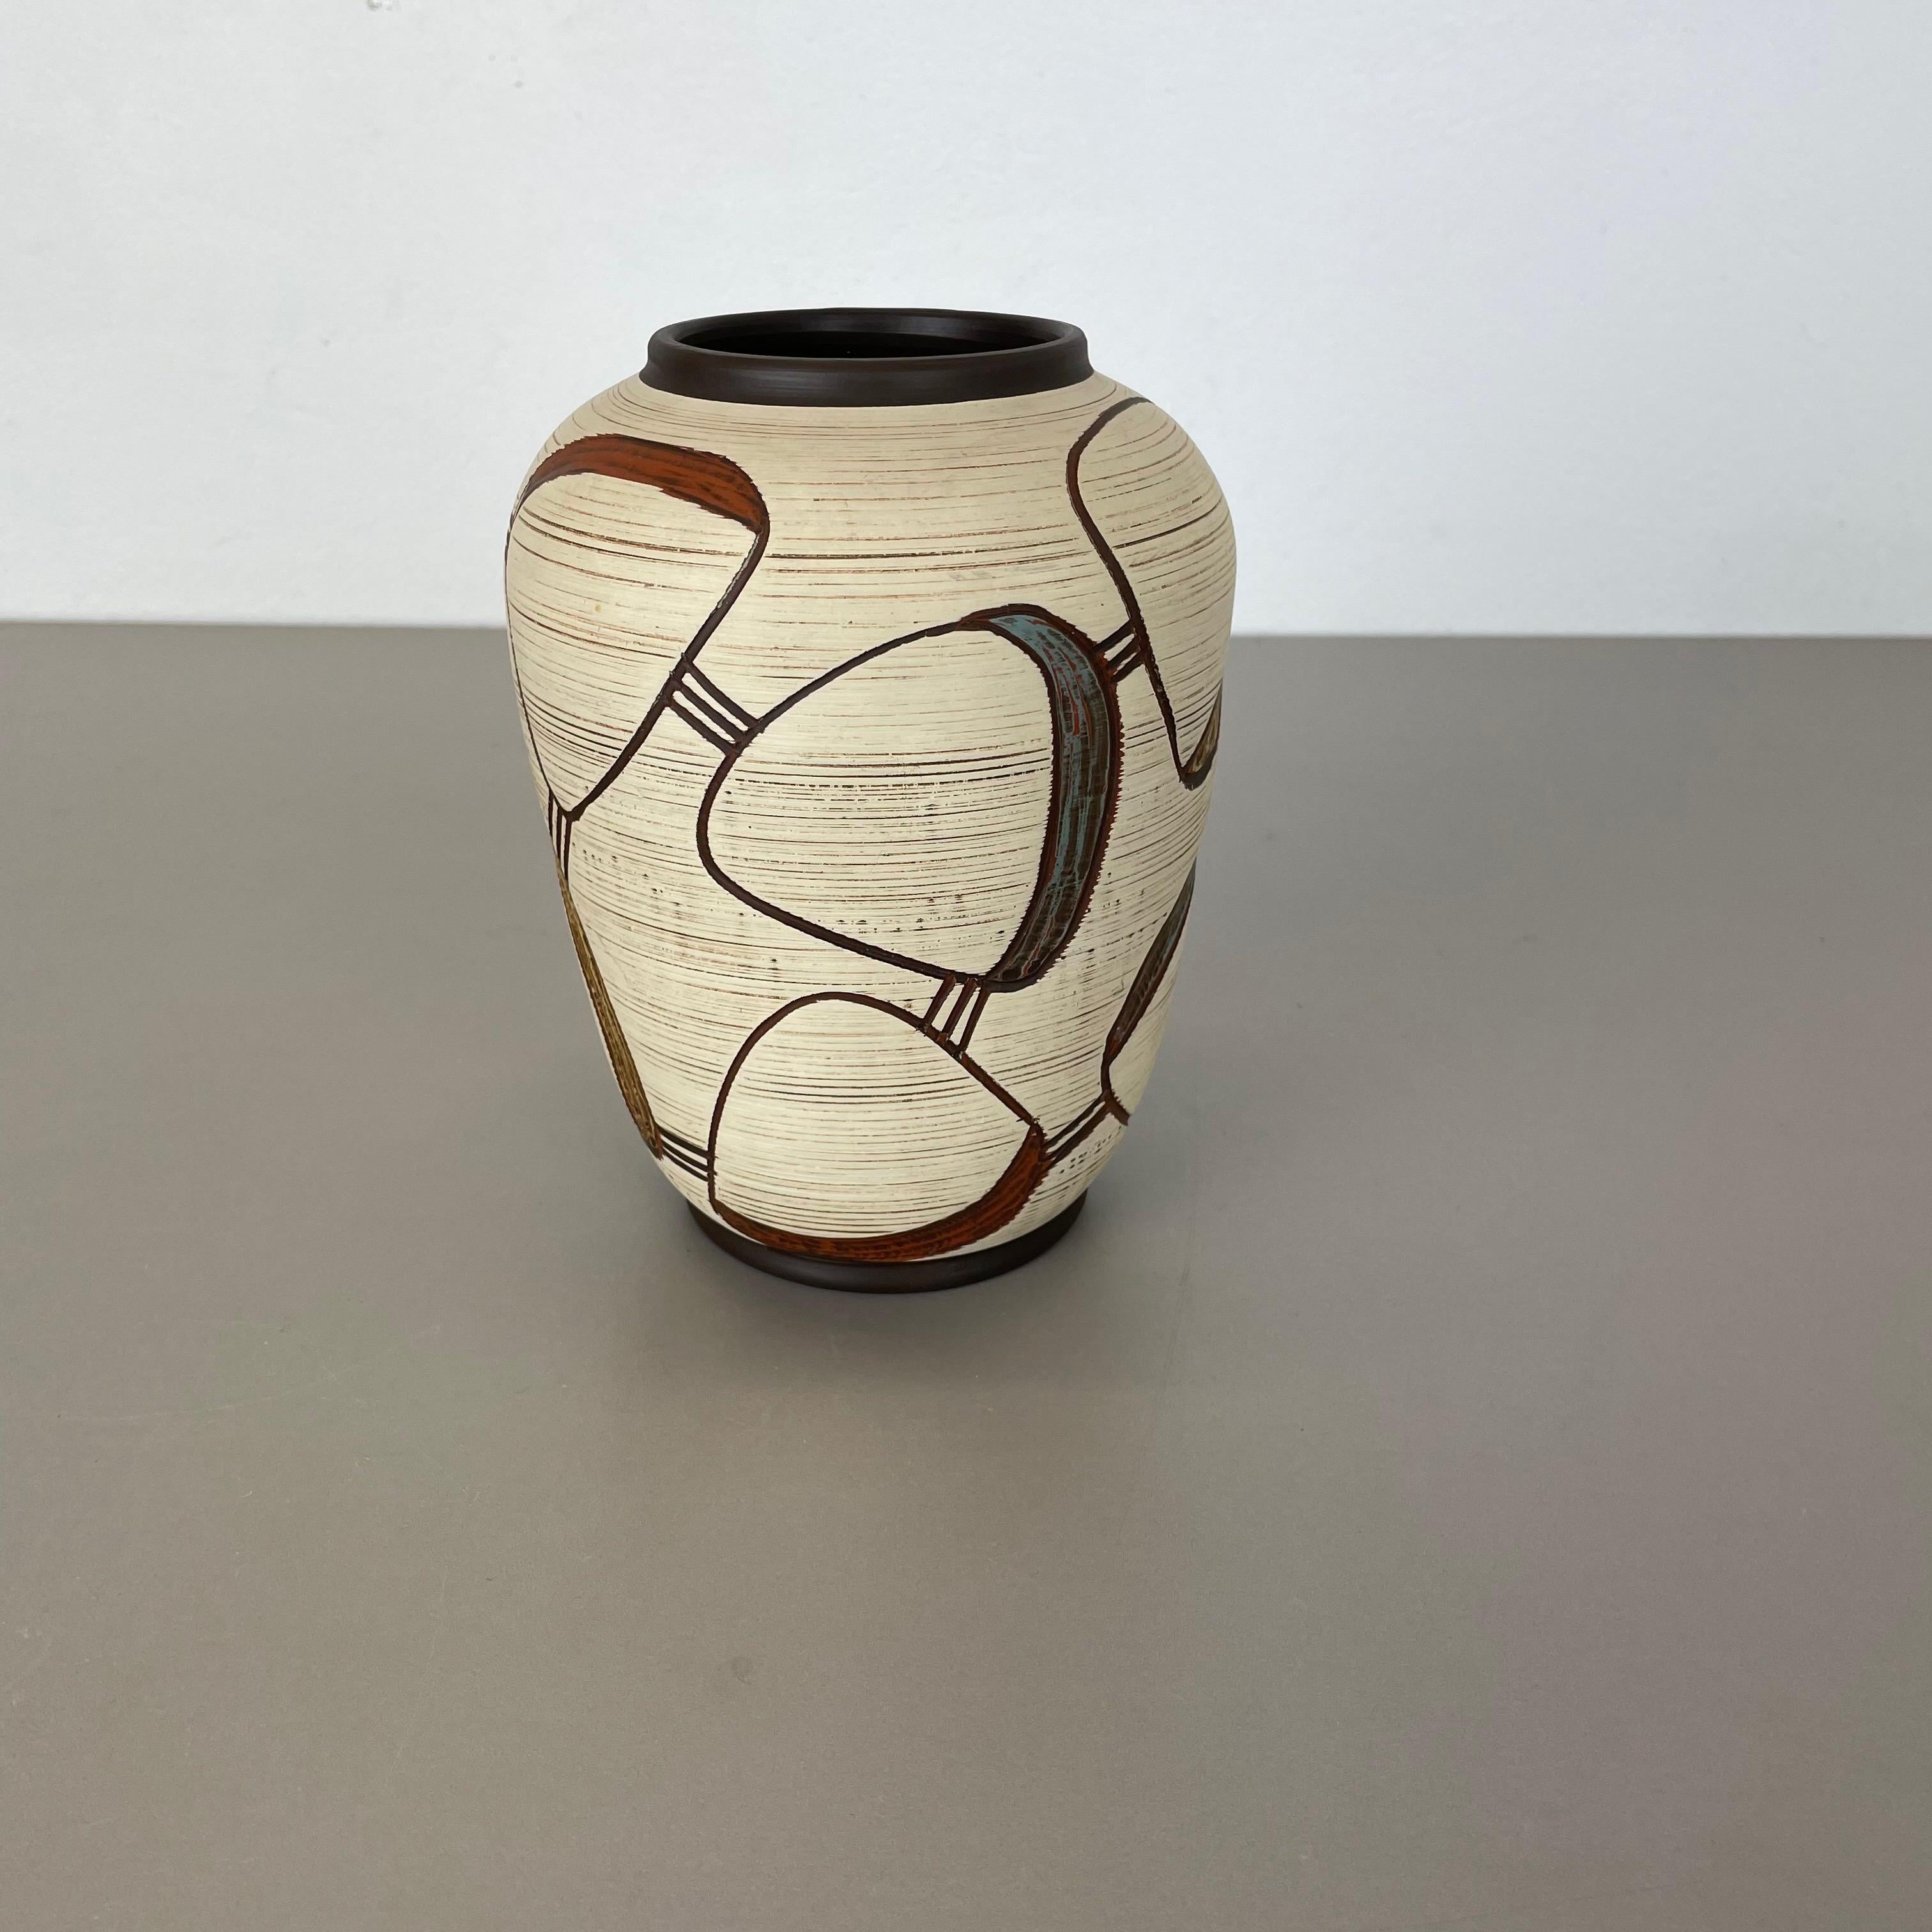 Article :

Vase en céramique


Producteur :

Sawa Ceramic, Allemagne


Design :

Franz Schwaderlapp



Décennie :

1950s



Description :

Vase original en céramique vintage des années 1950 en Allemagne. Production allemande